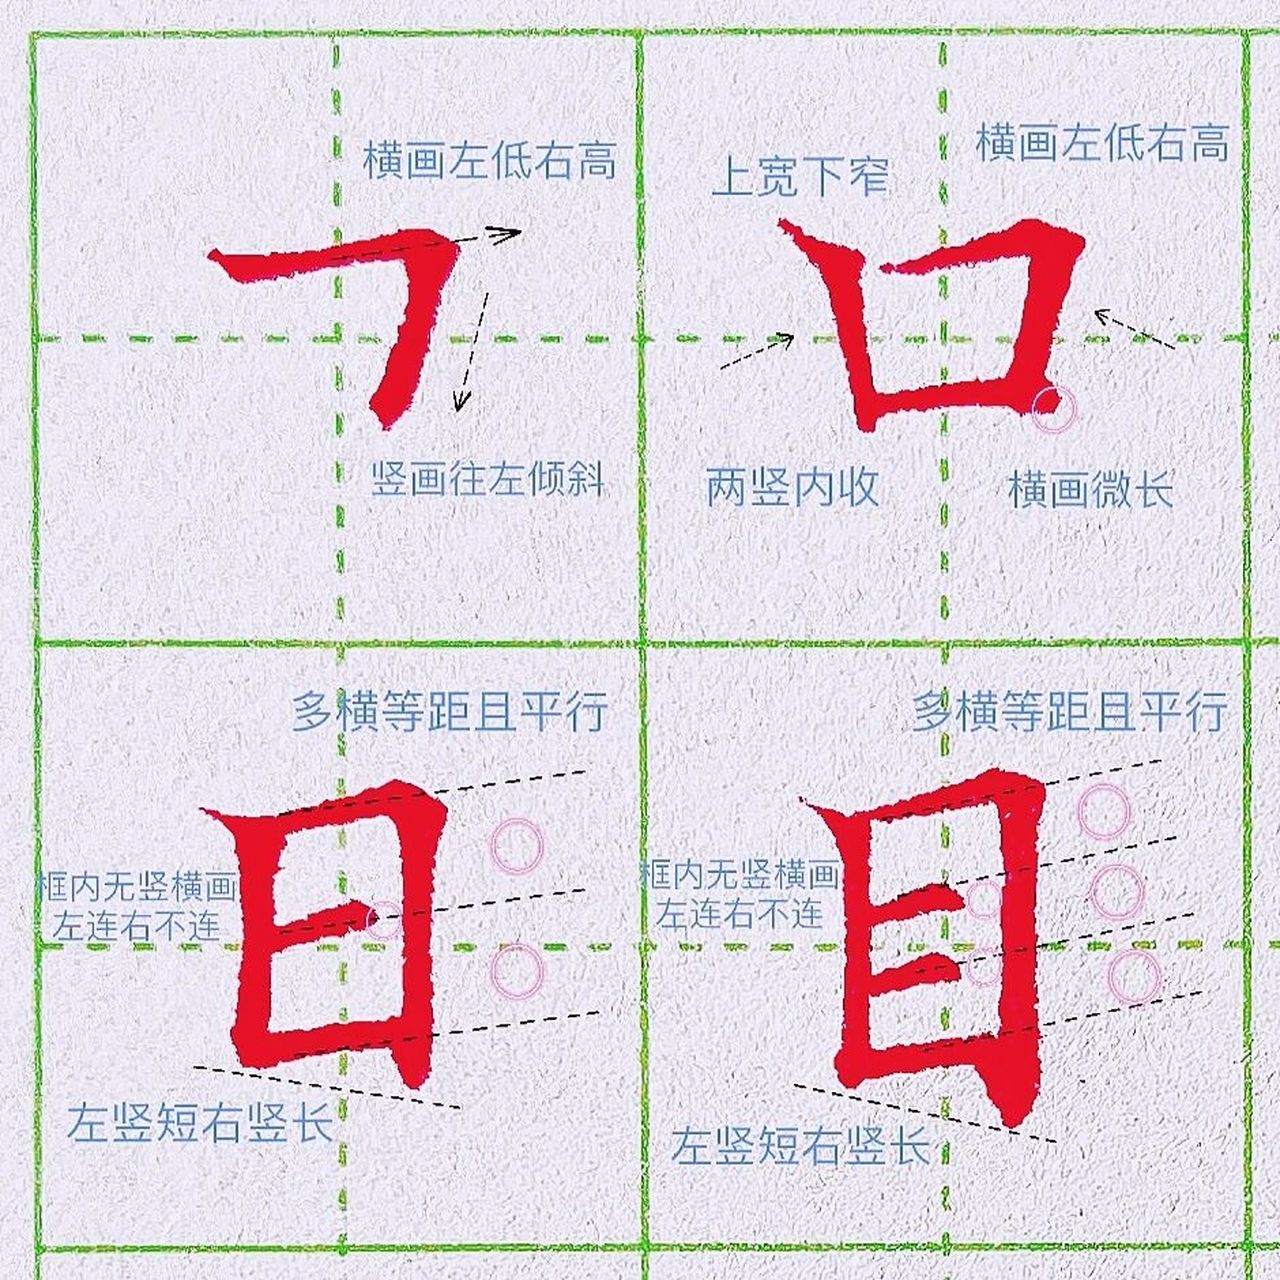 第十二课:横折的练习 73横折写法: 横折是横和竖的组合,一般我们在